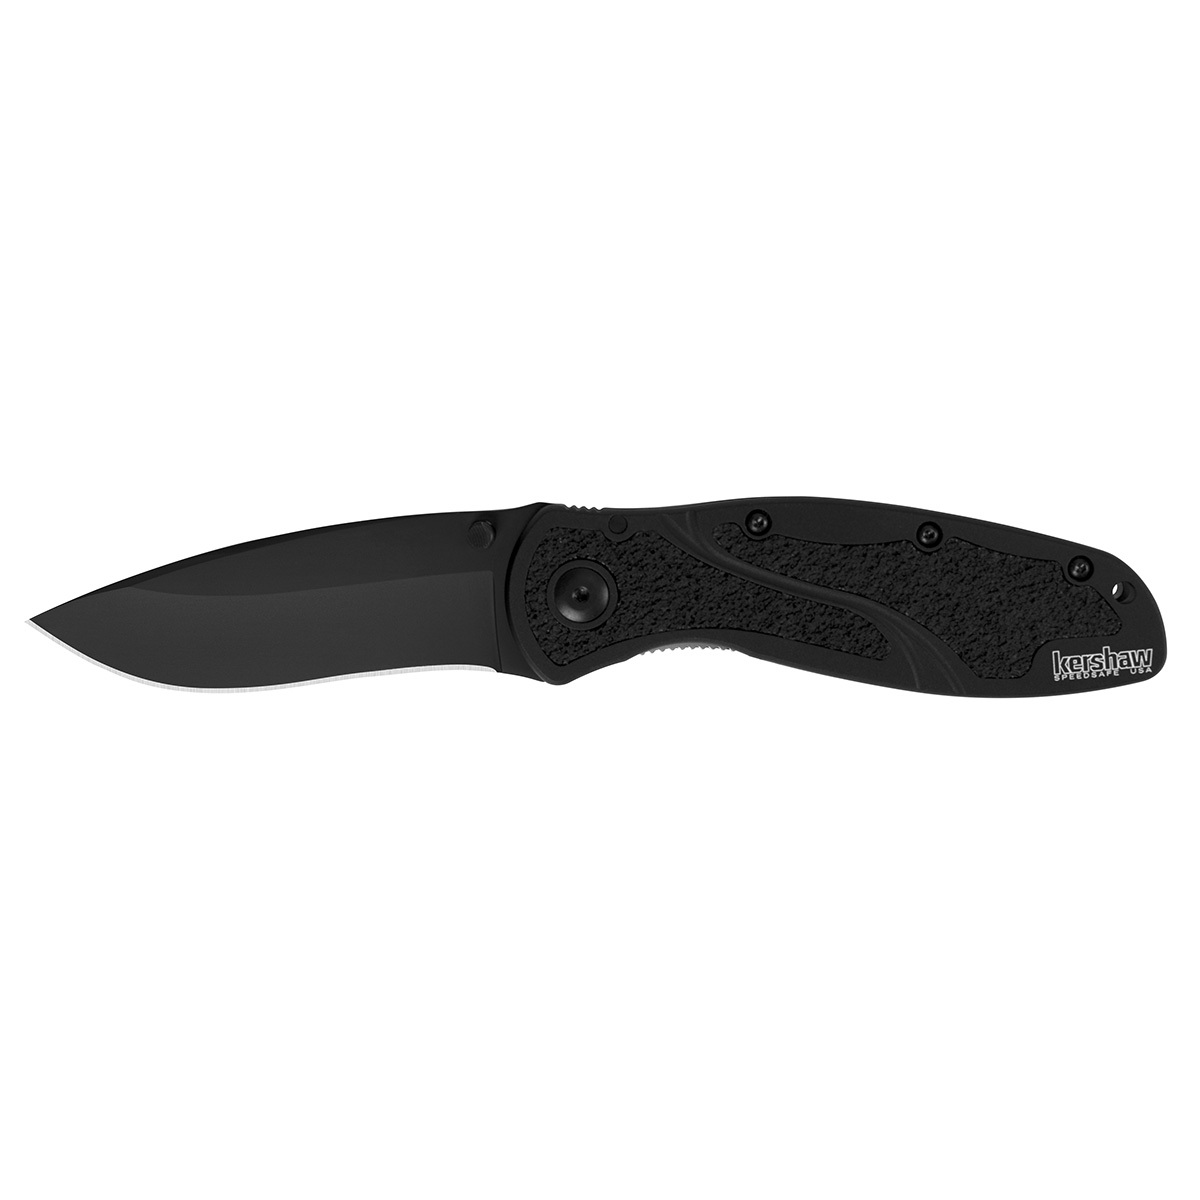 Складной нож Kershaw 1670BLK Blur Black, сталь Sandvik 14C28N, рукоять анодированный алюминий складной нож stinger с клипом 114 3 мм рукоять нержавеющая сталь подарочный бокс